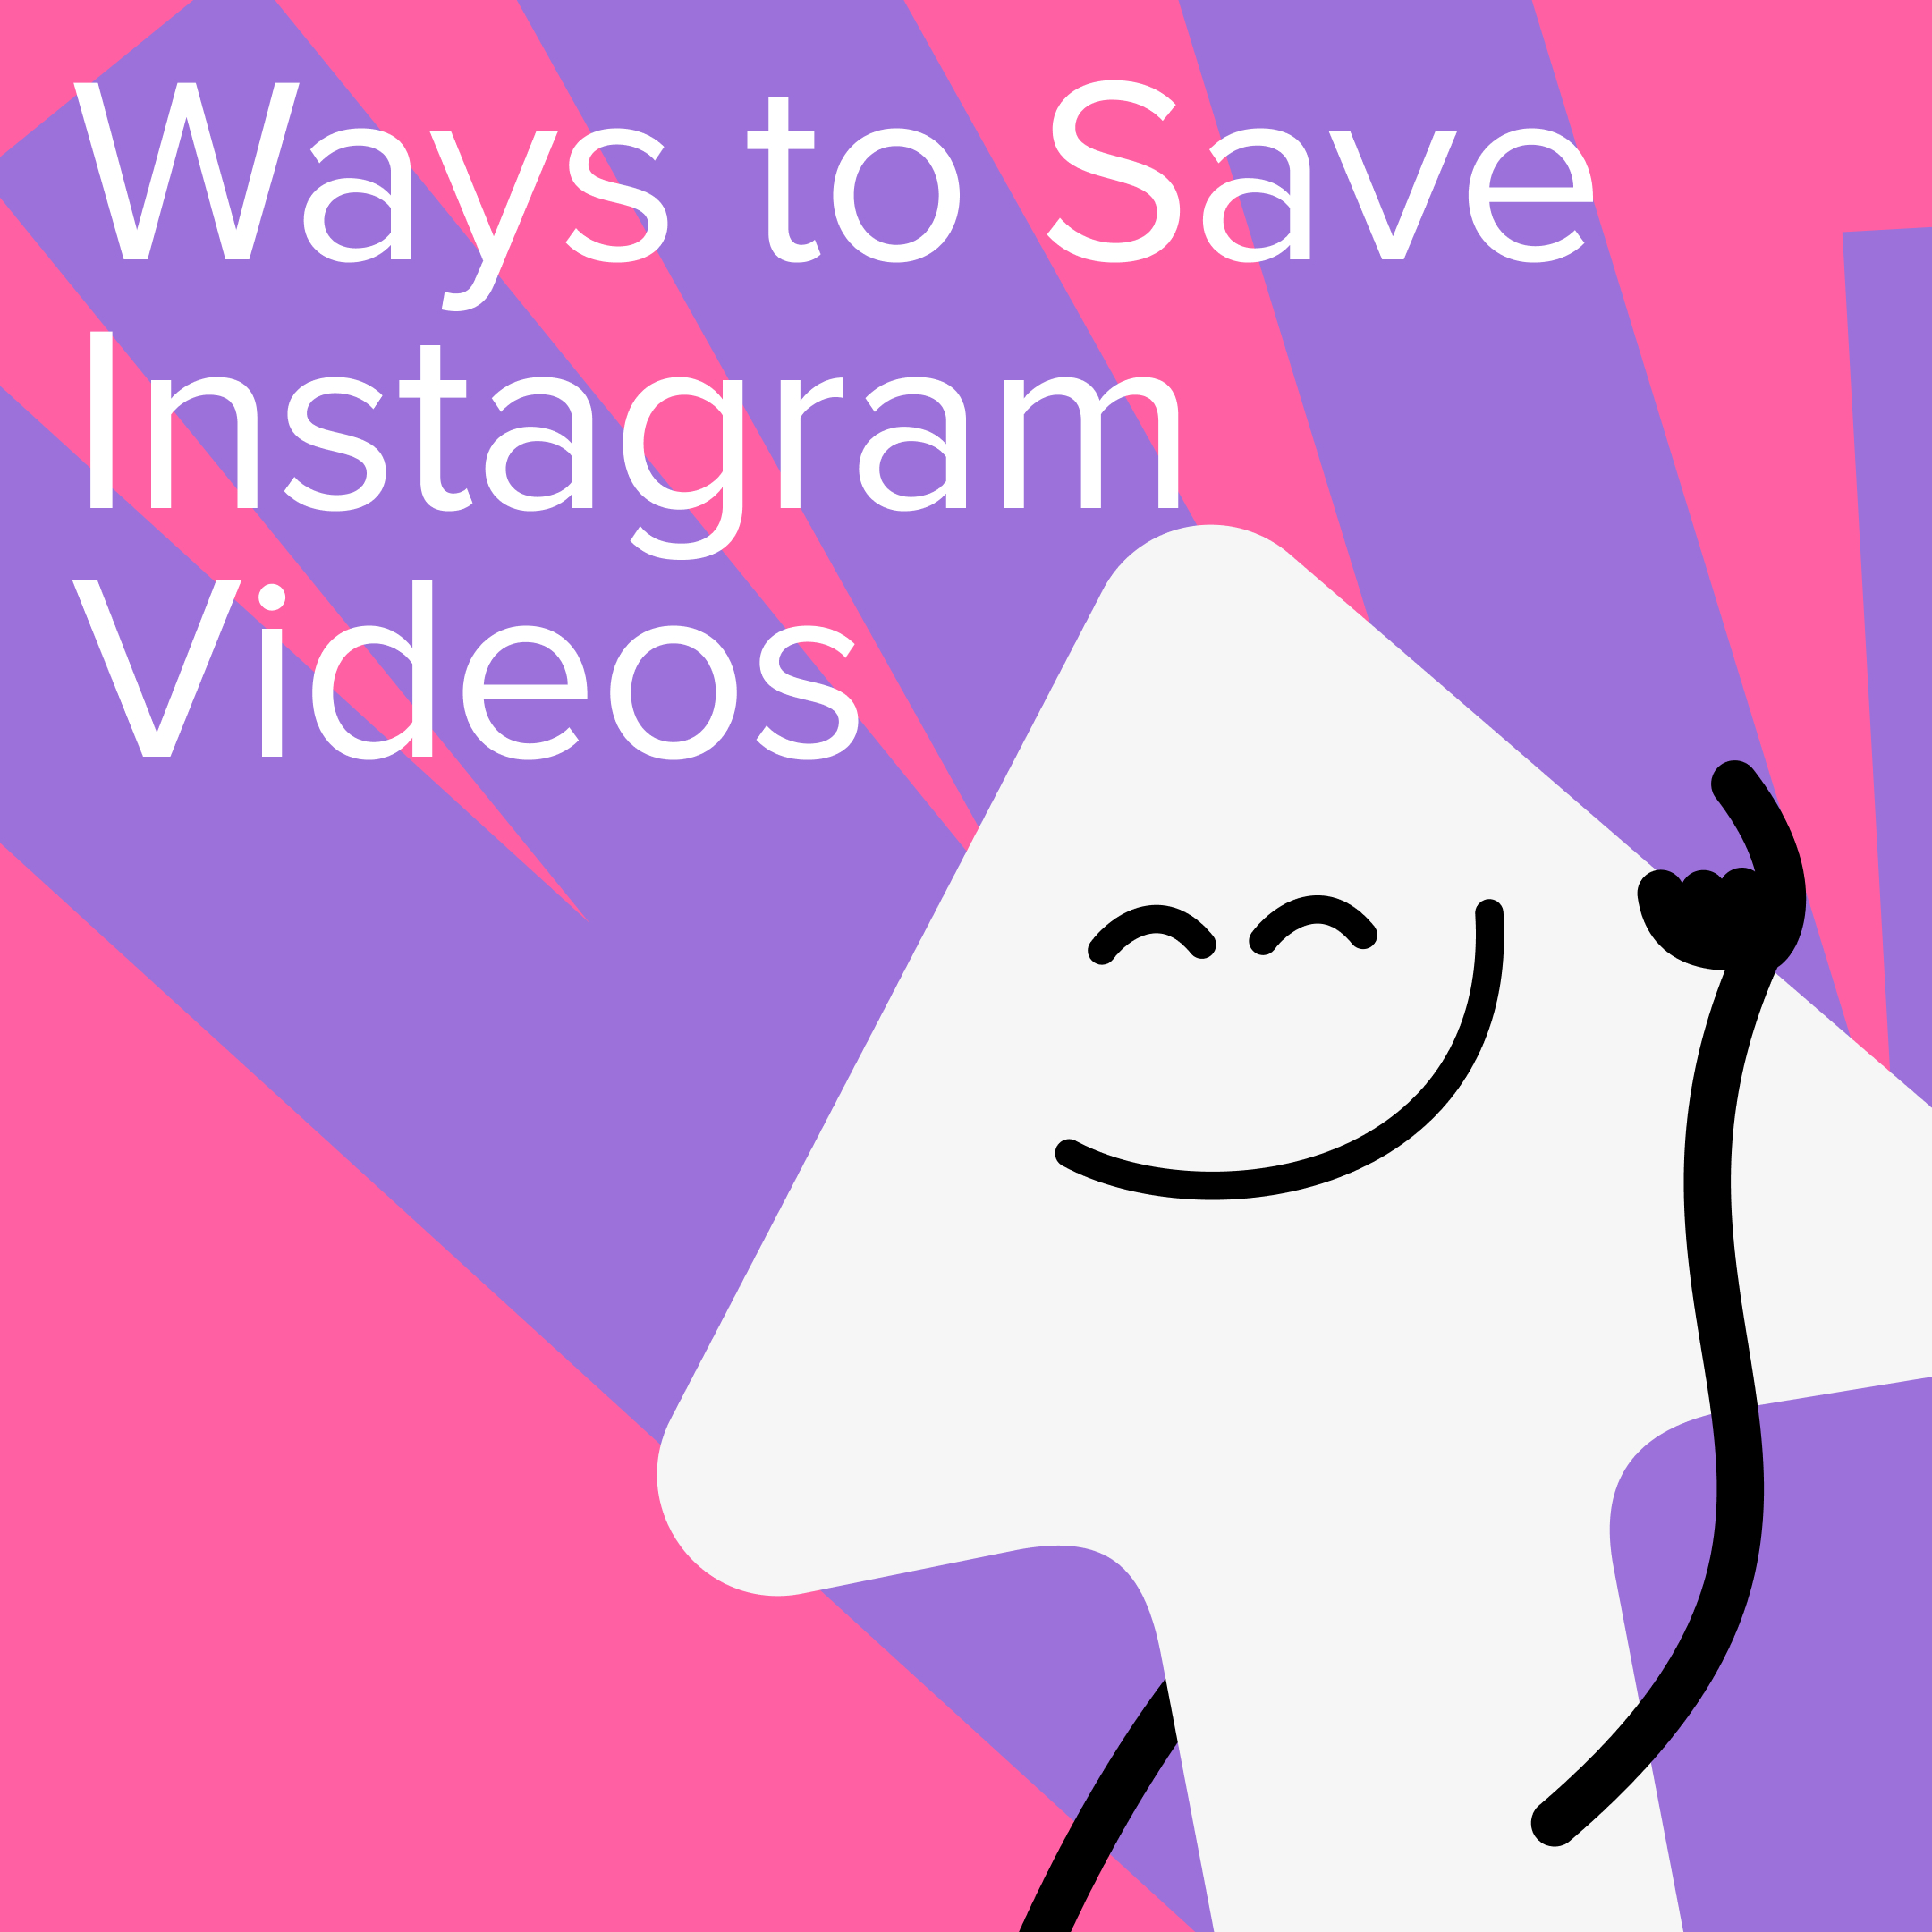 download Instagram video